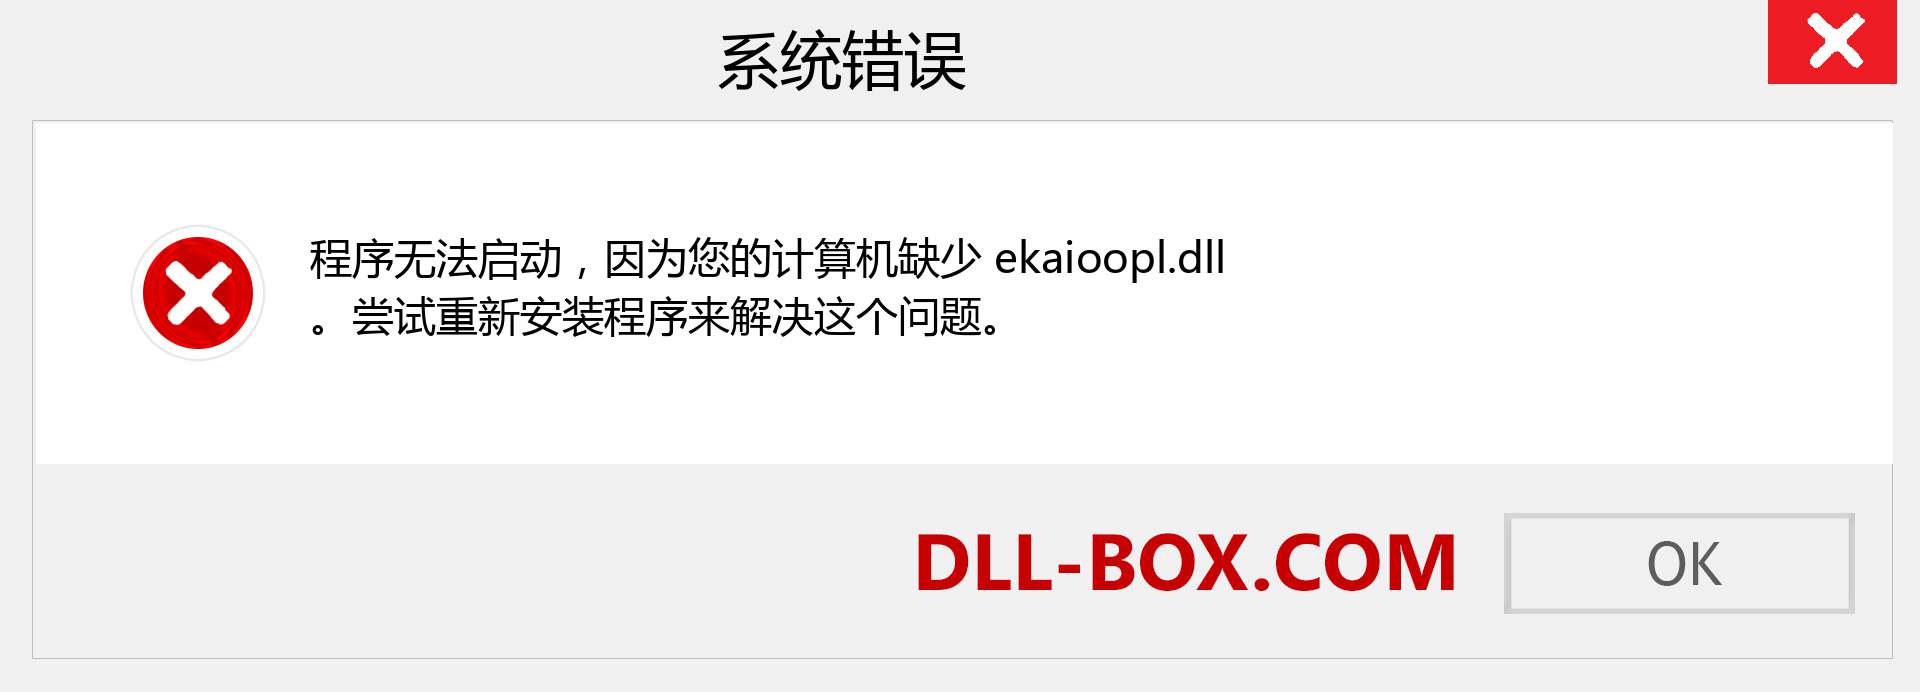 ekaioopl.dll 文件丢失？。 适用于 Windows 7、8、10 的下载 - 修复 Windows、照片、图像上的 ekaioopl dll 丢失错误